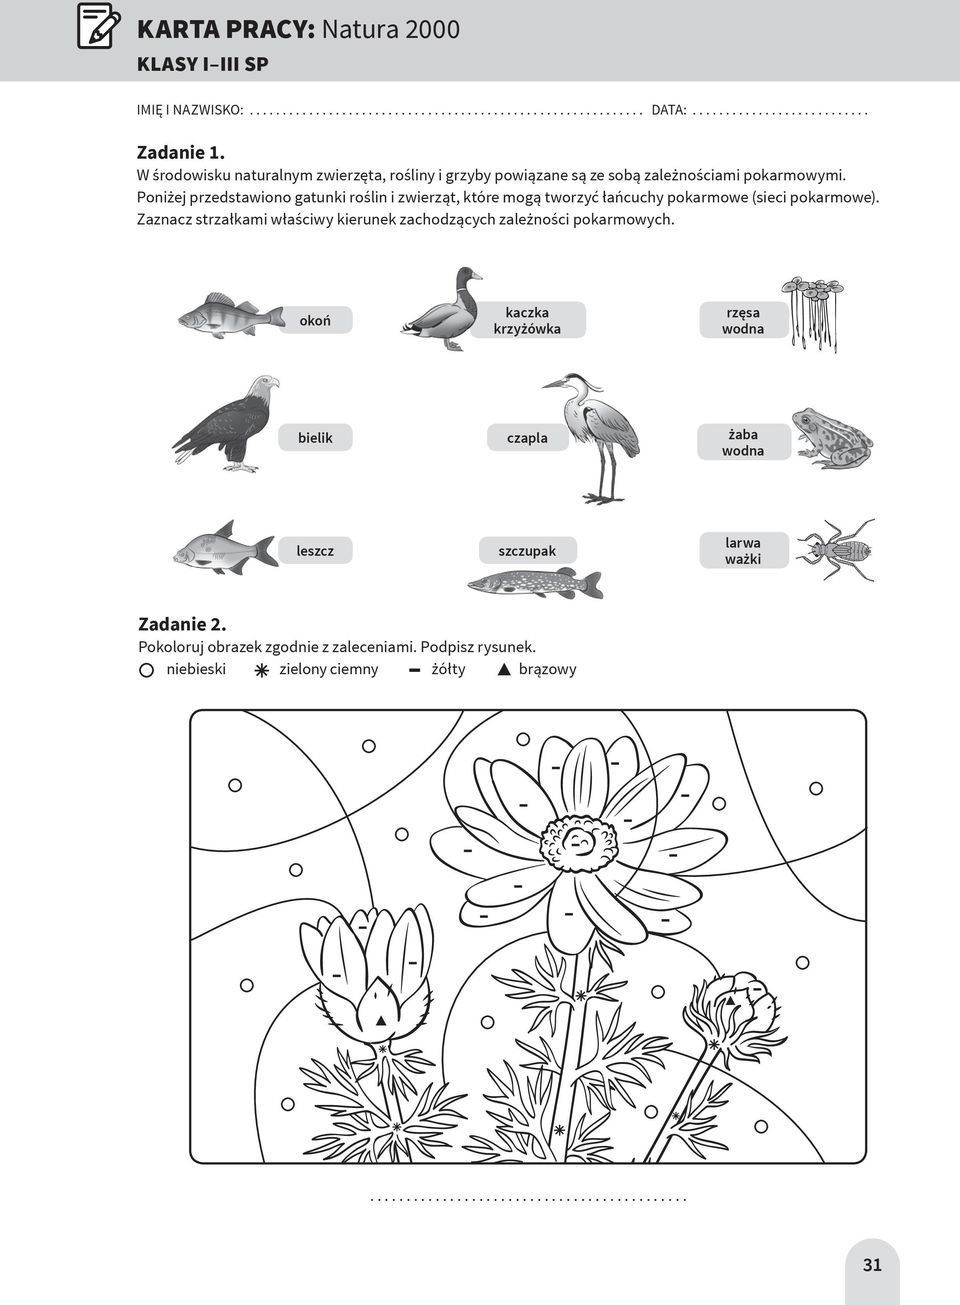 Poniżej przedstawiono gatunki roślin i zwierząt, które mogą tworzyć łańcuchy pokarmowe (sieci pokarmowe).